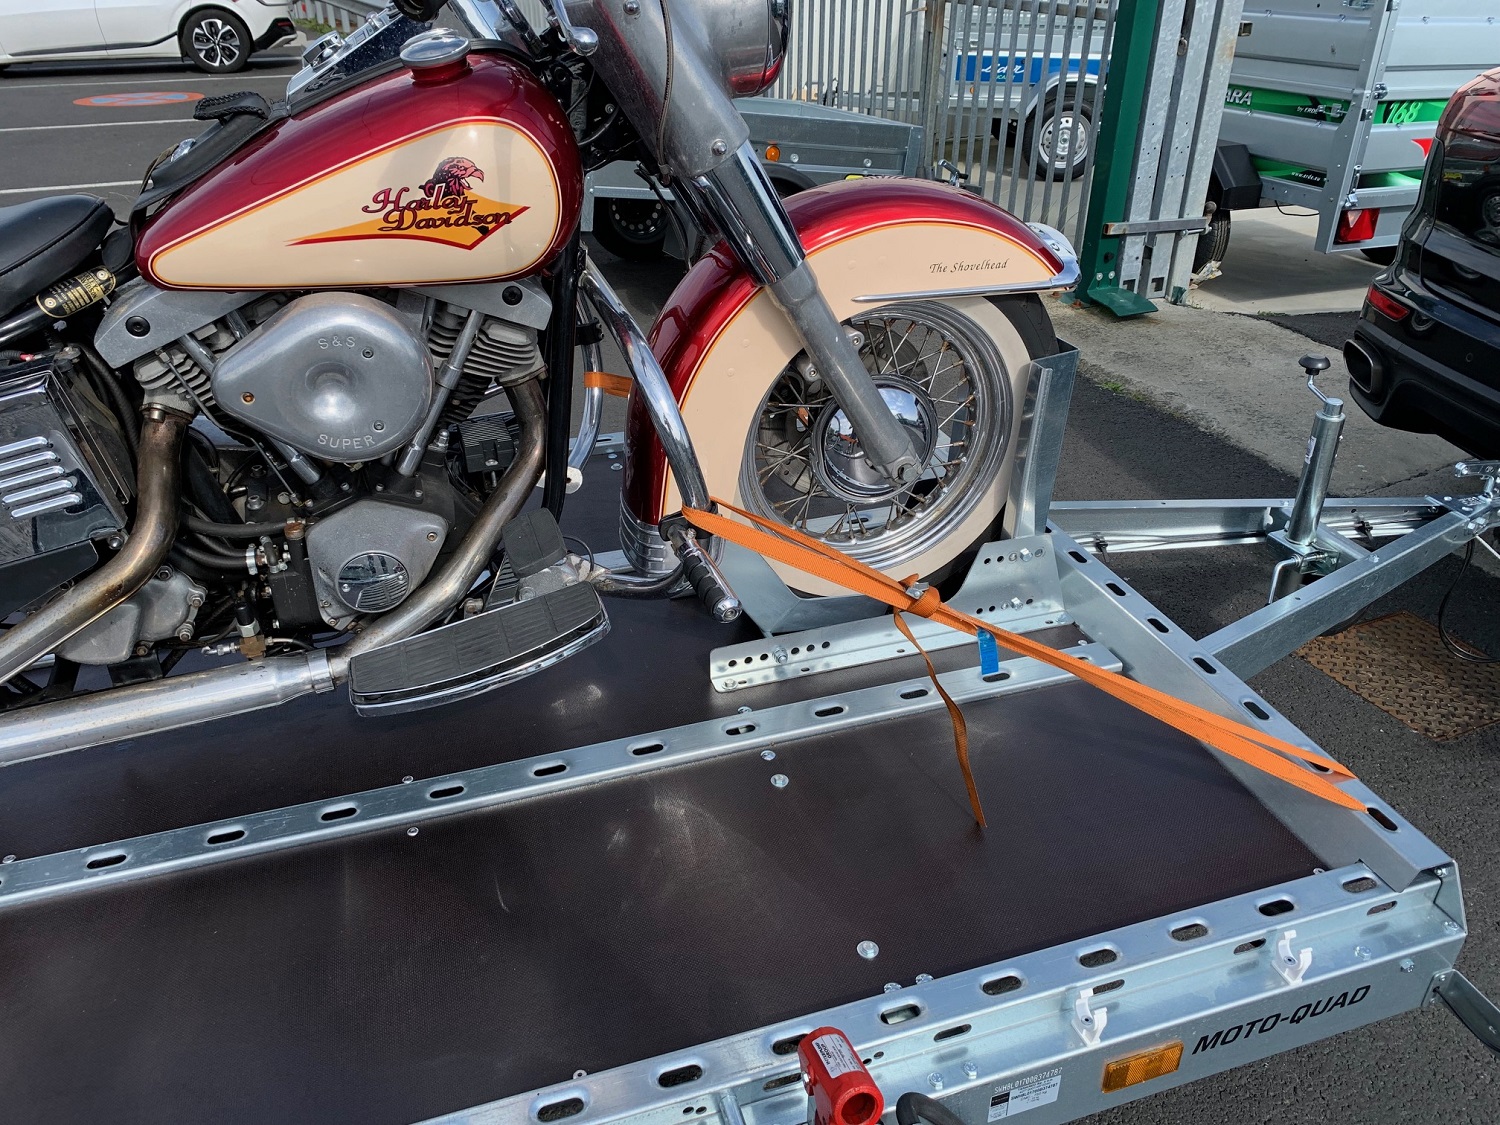 Remorque moto quad basculante - Équipement moto